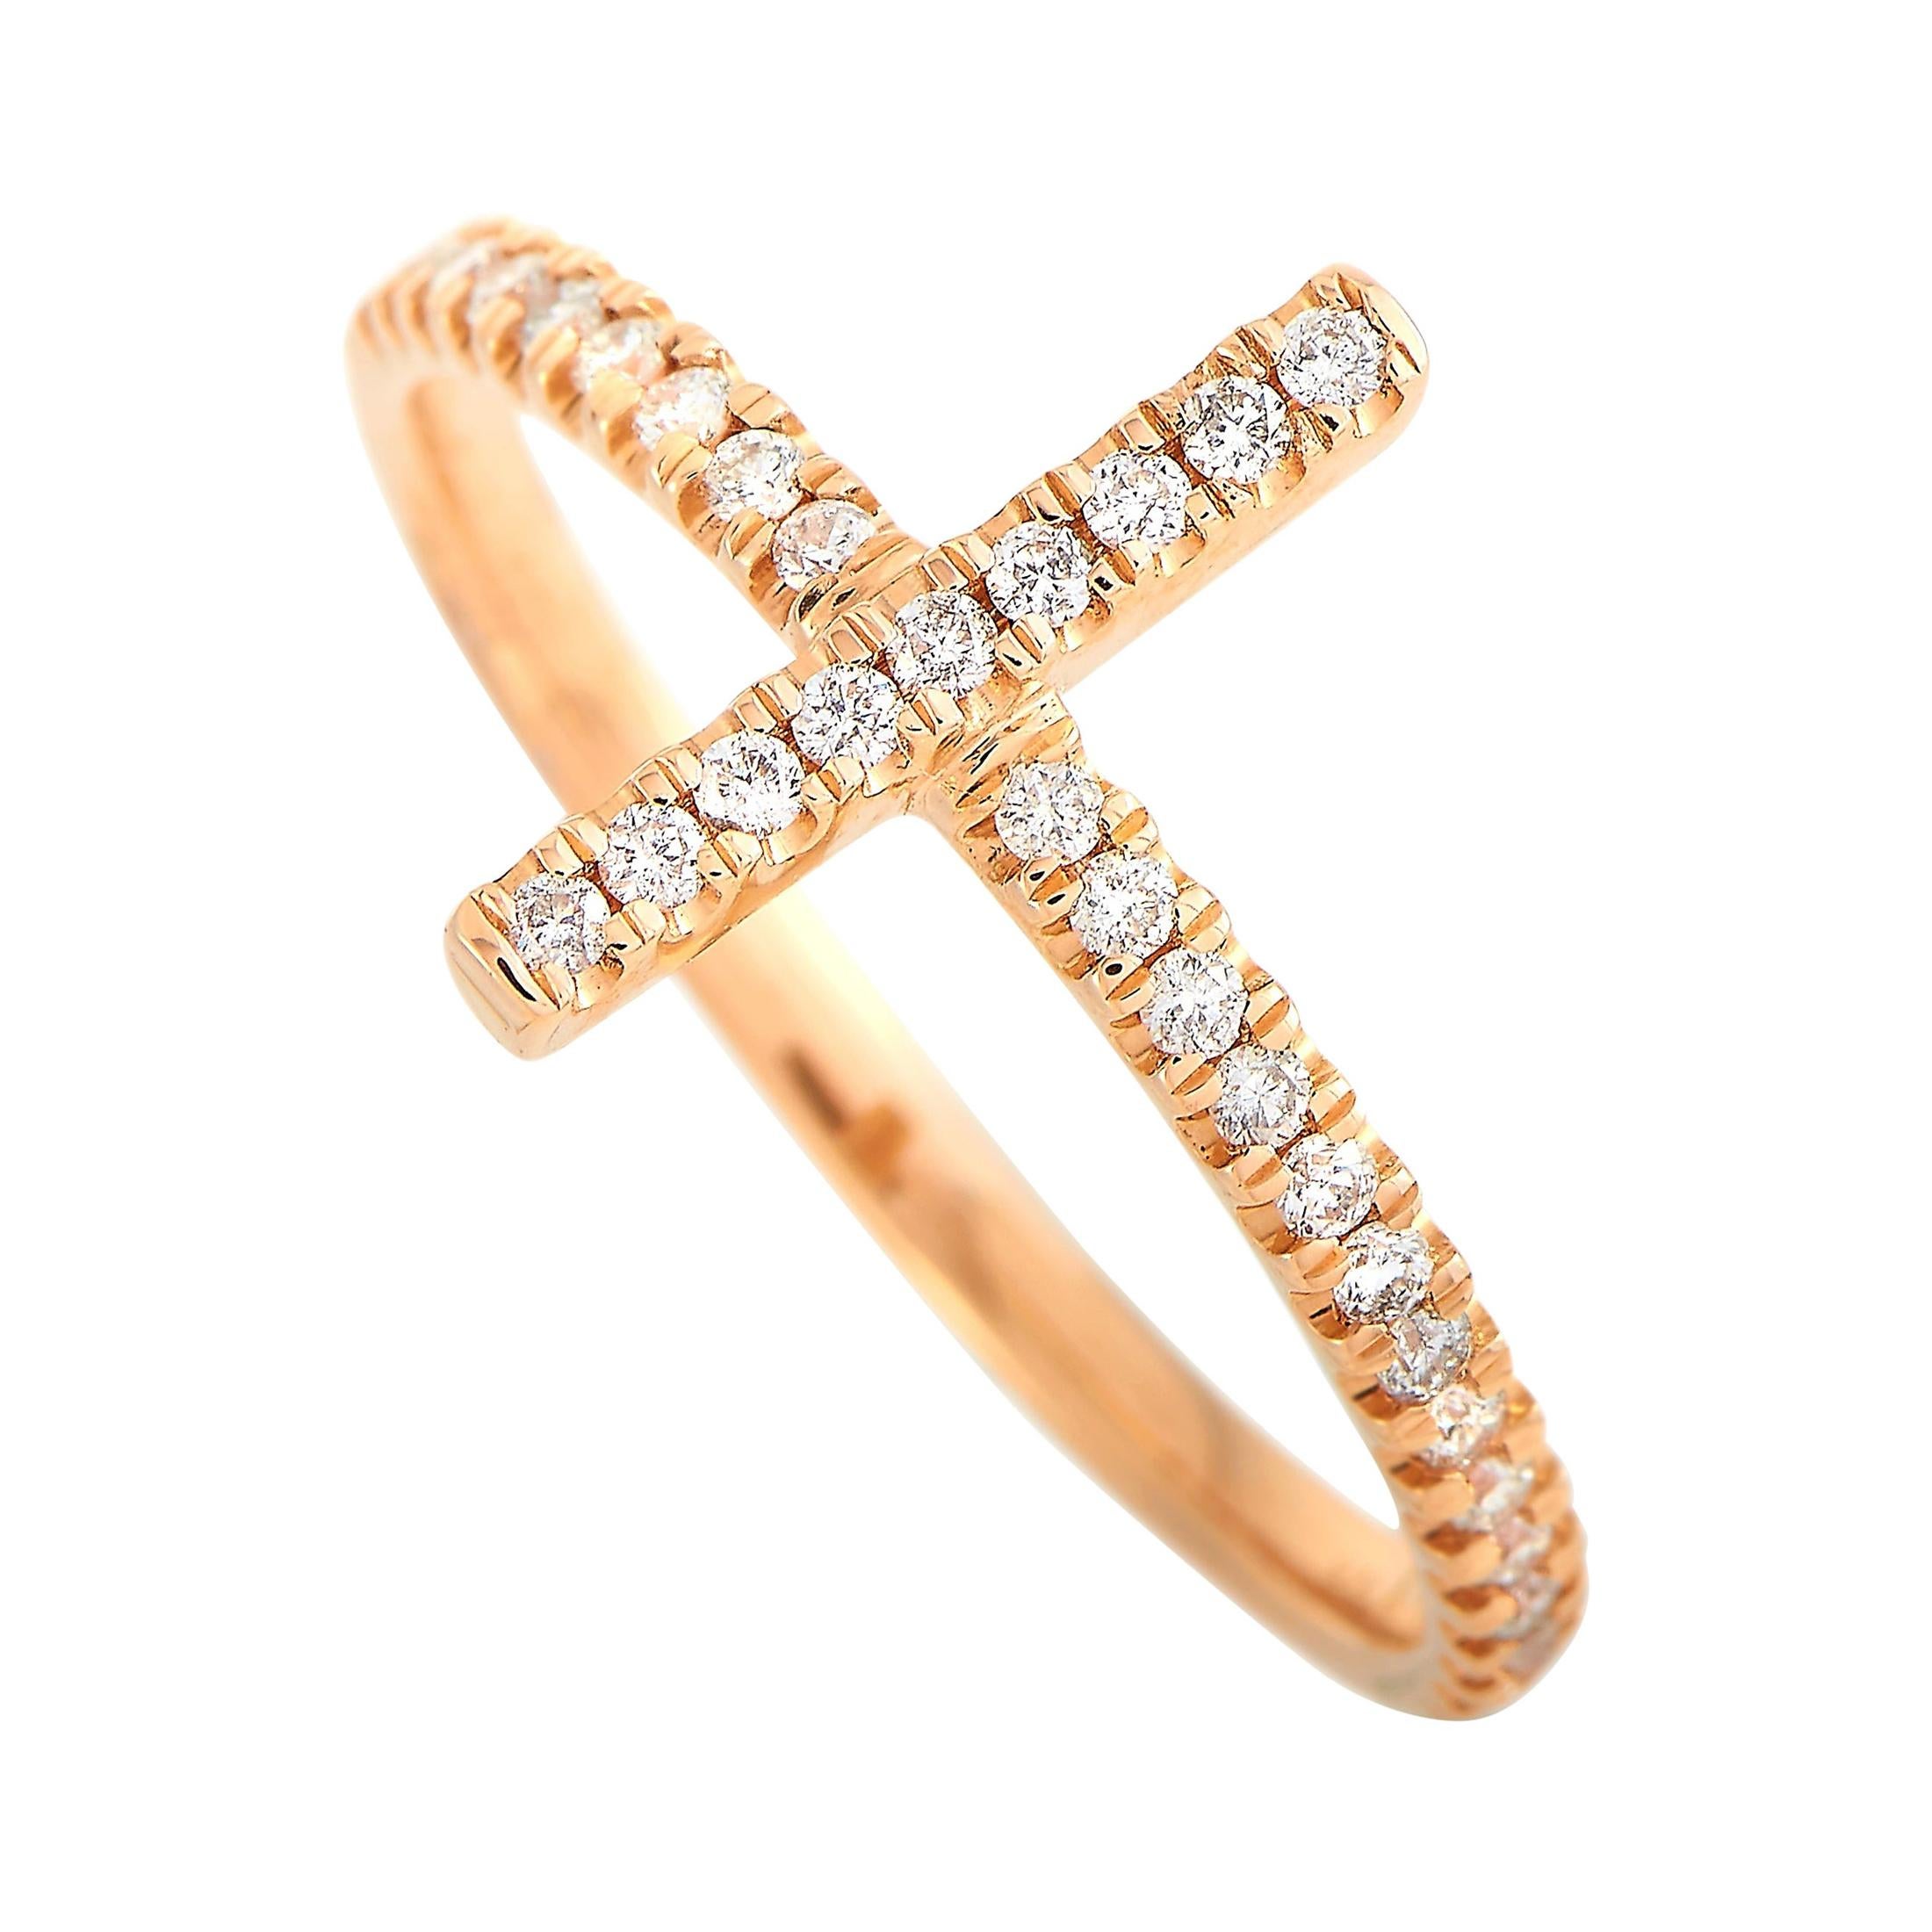 LB Exclusive 14 Karat Rose Gold 0.23 Carat Diamond Ring